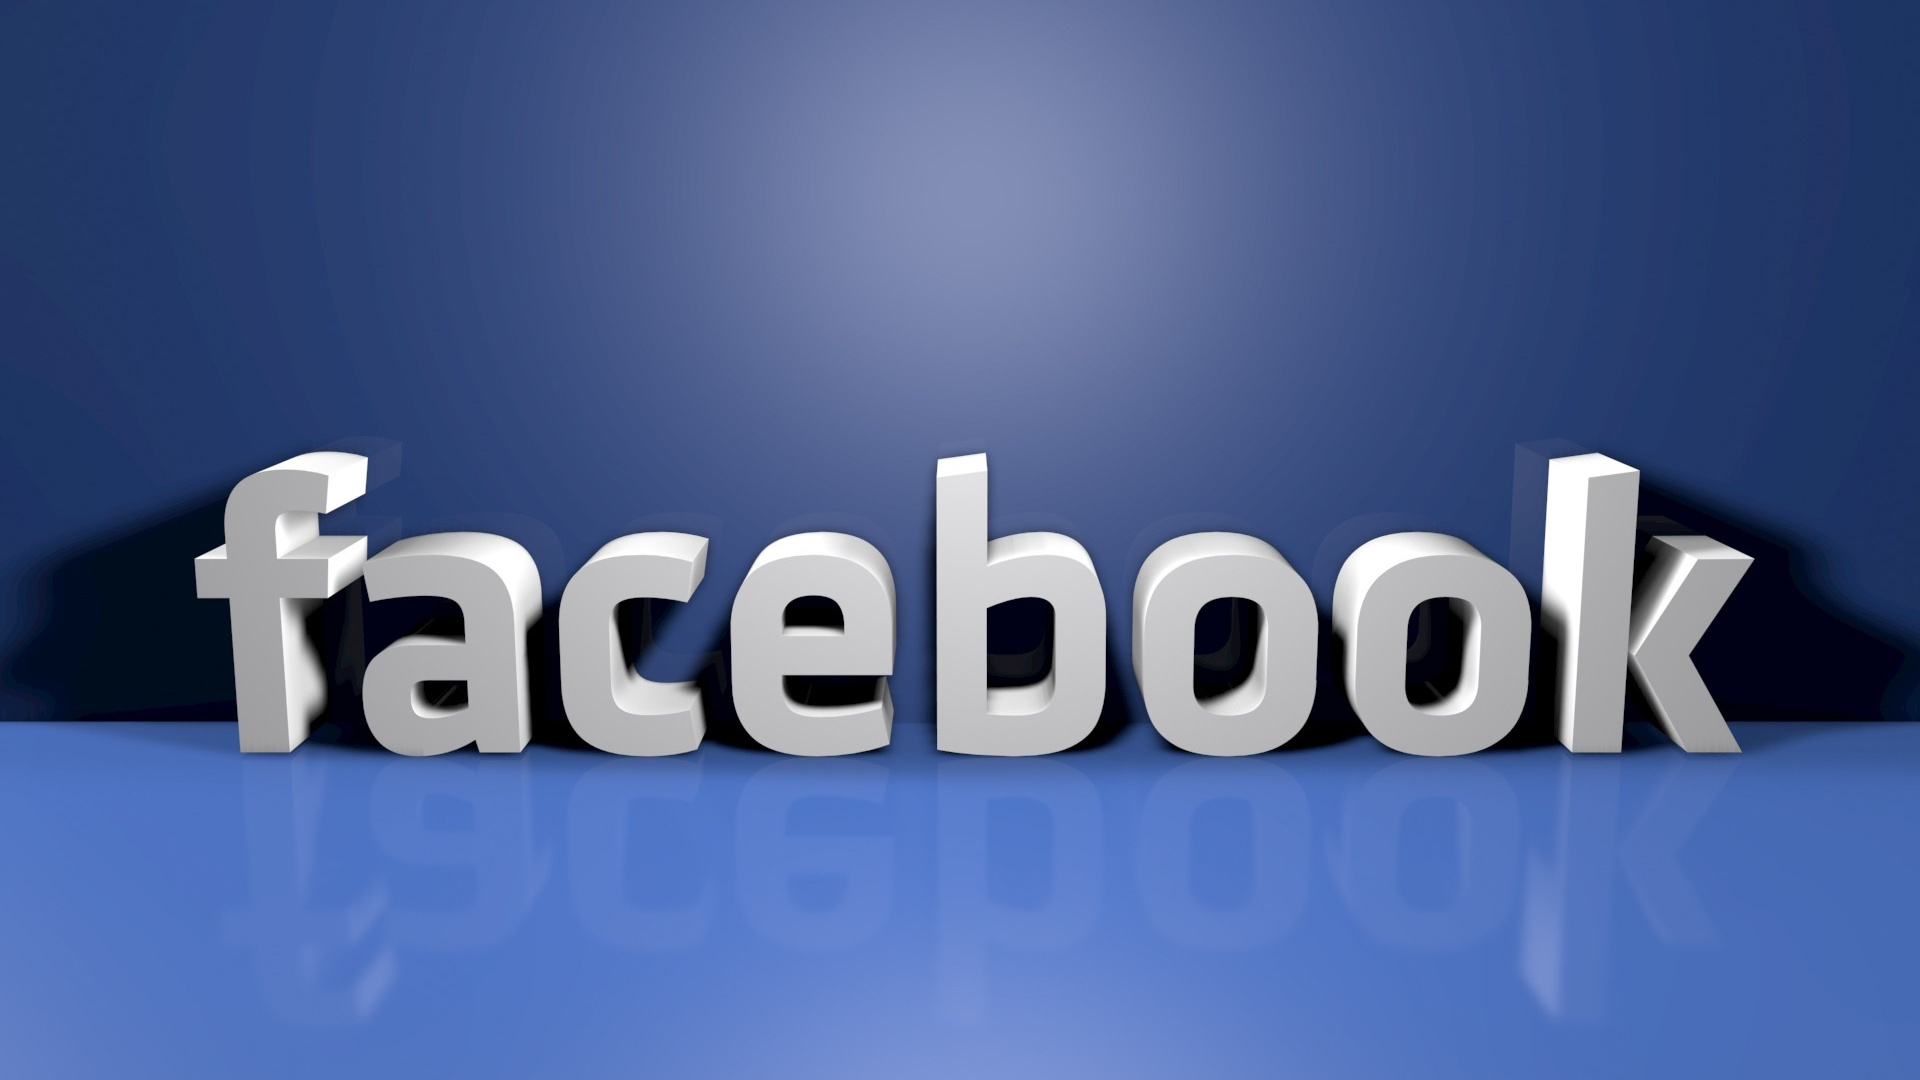 什么是facebook？如何做facebook营销？